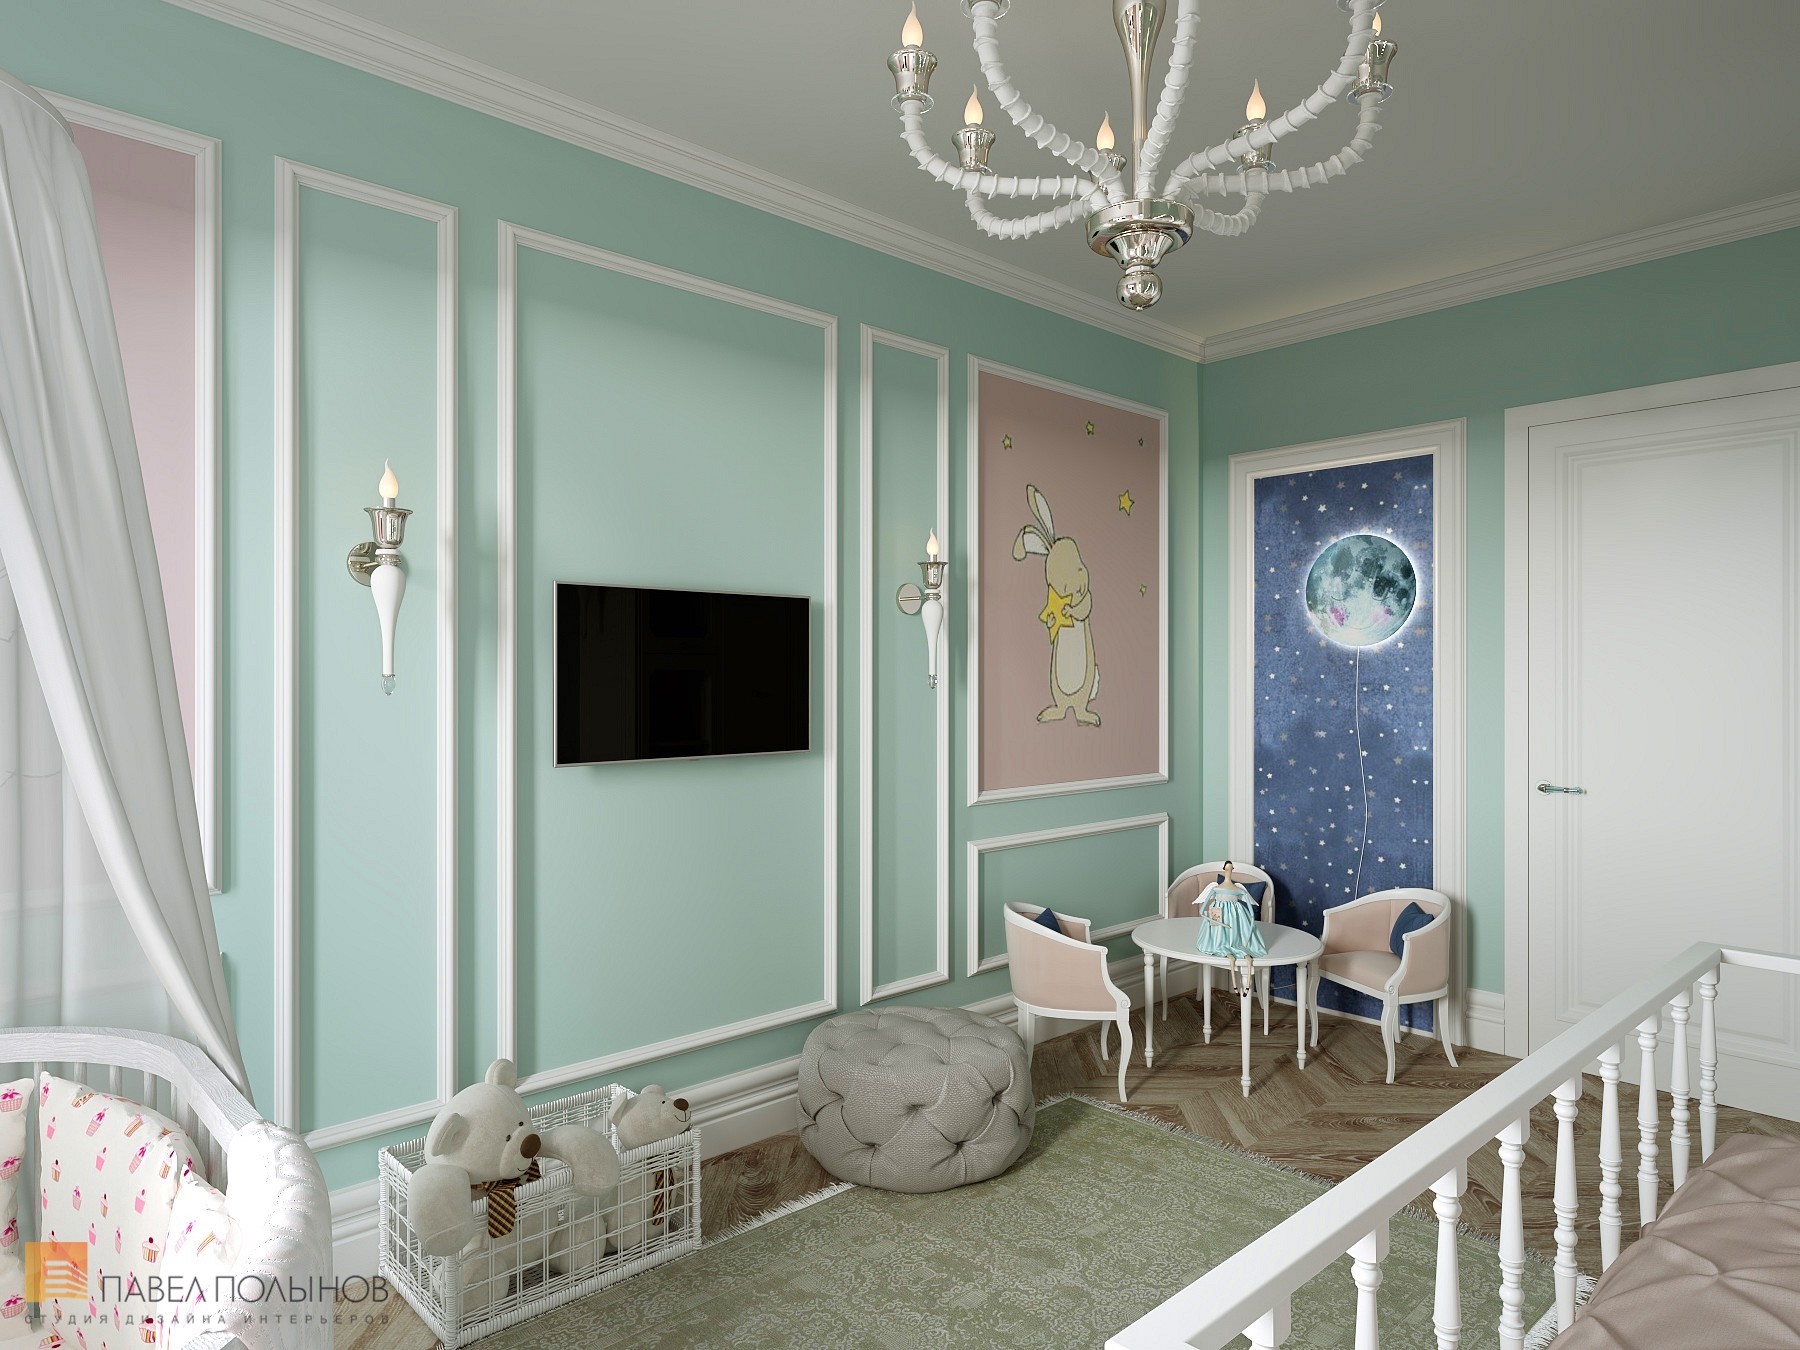 Фото дизайн детской комнаты из проекта «Интерьер квартиры в стиле неоклассика в ЖК «The Residence», 219 кв.м.»